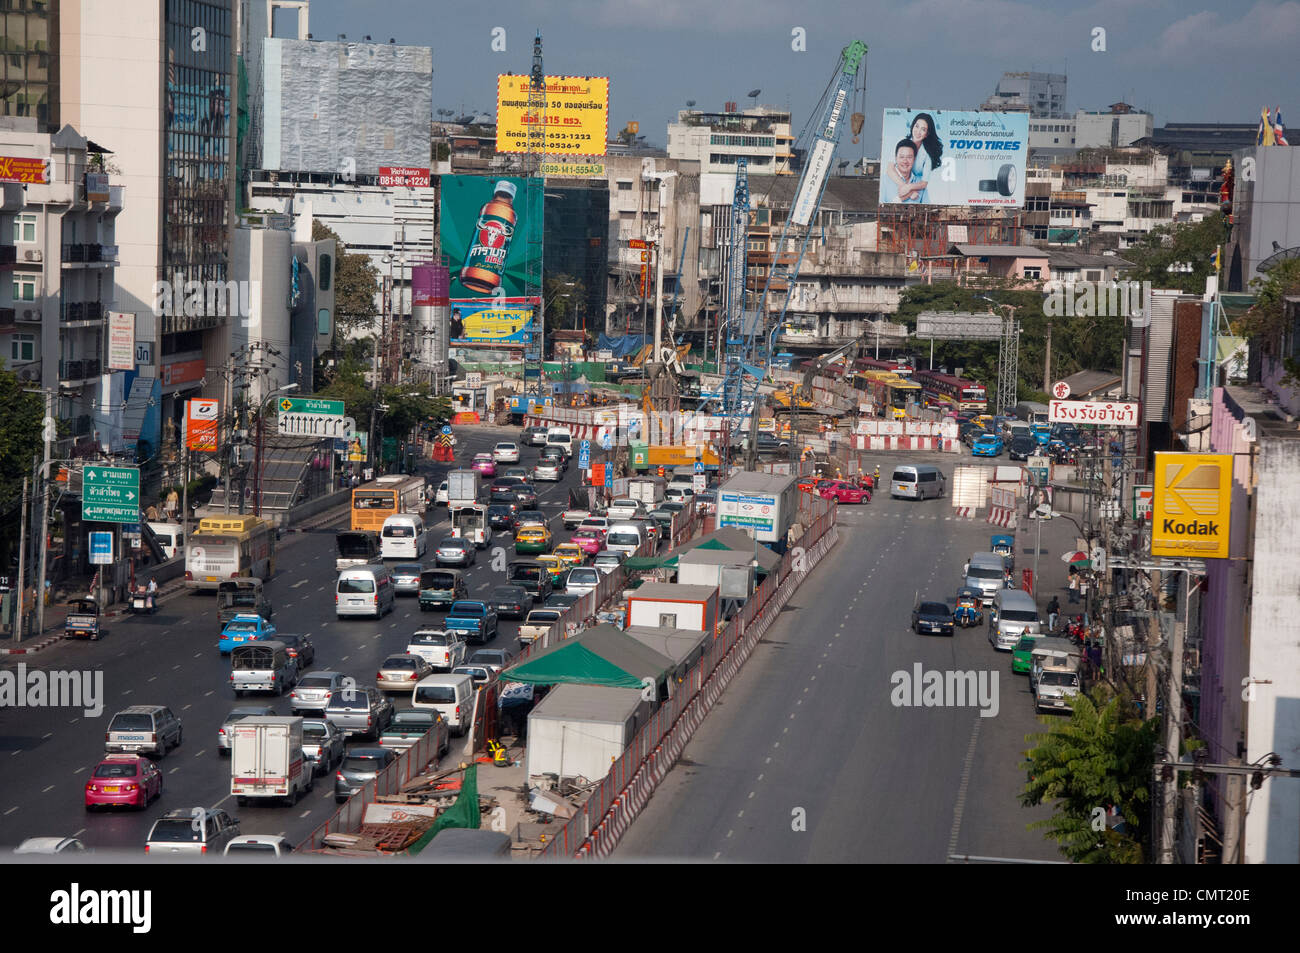 Tailandia, Bangkok, típico del centro de la ciudad de Bangkok Street View. Foto de stock